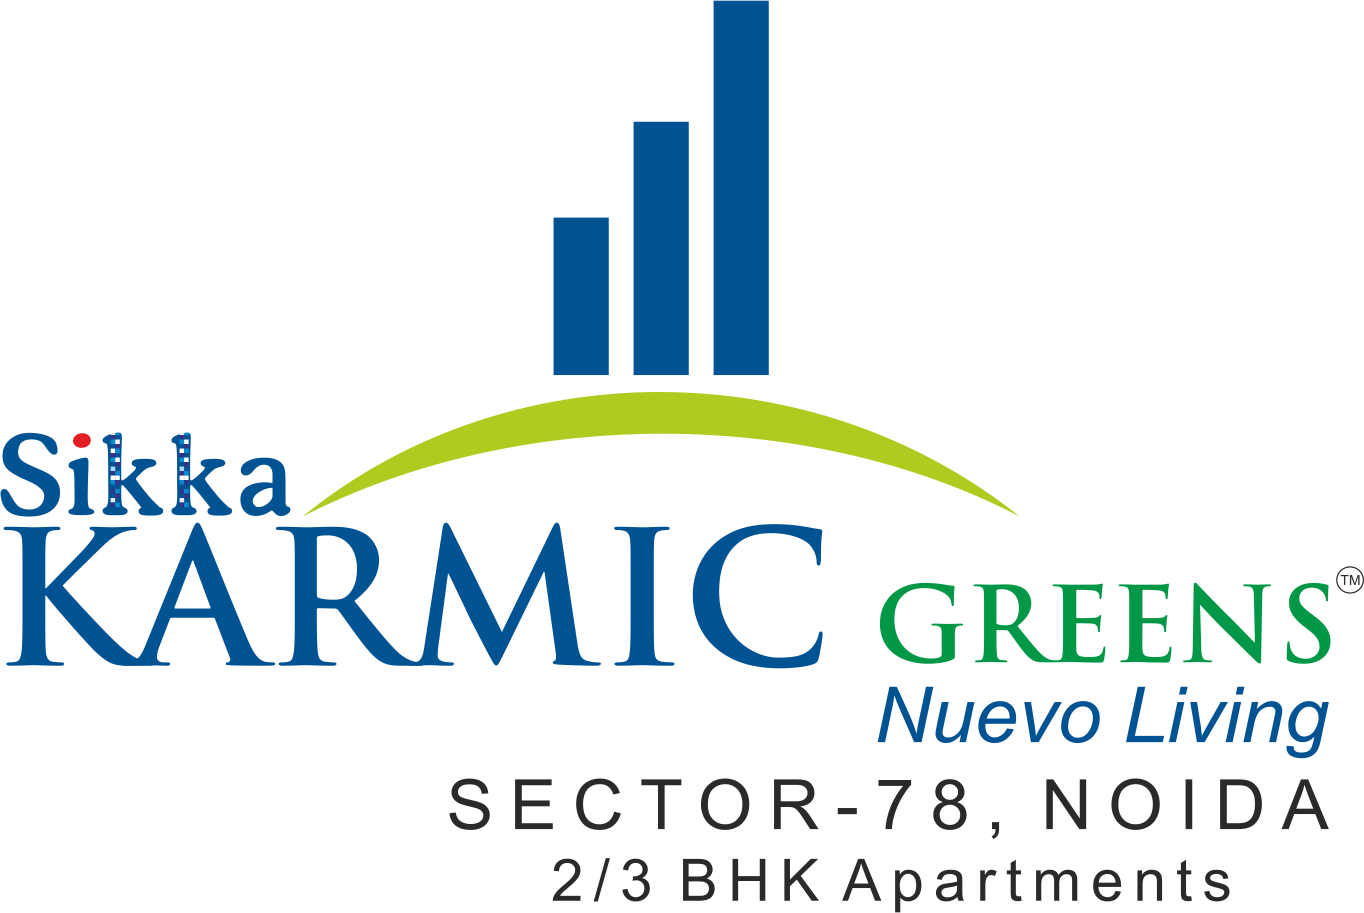 Sikka Karmic Greens - Nuevo Living